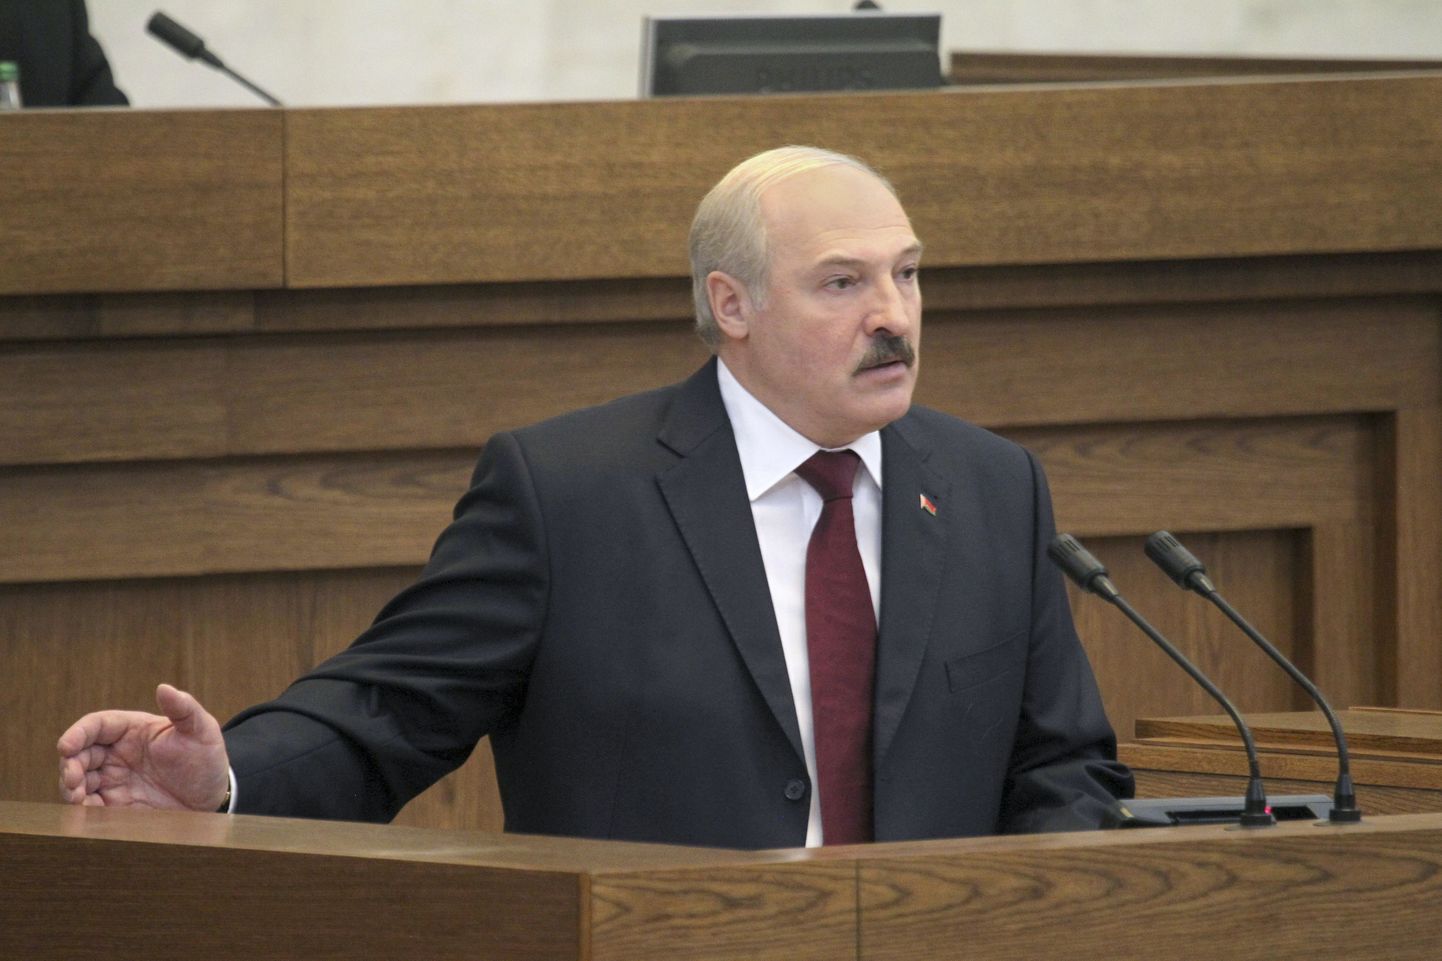 Valgevene president Aleksandr Lukašenko